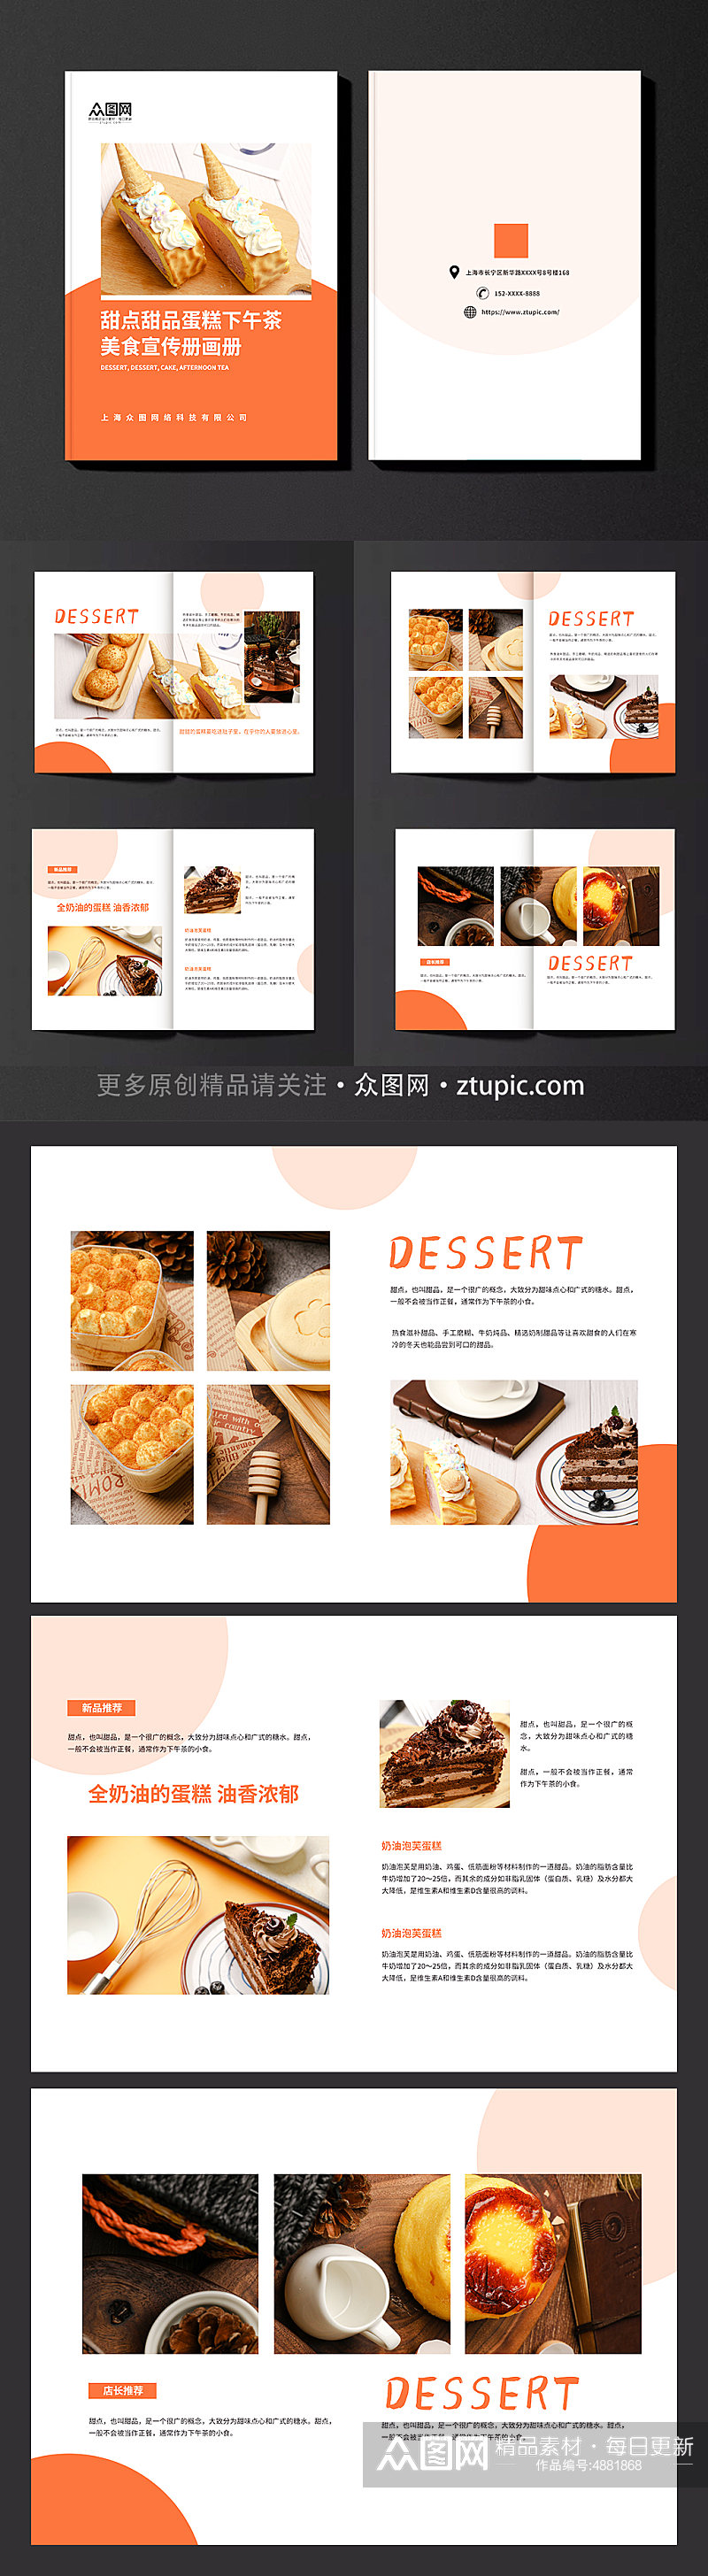 创意甜点甜品蛋糕下午茶美食宣传册画册素材